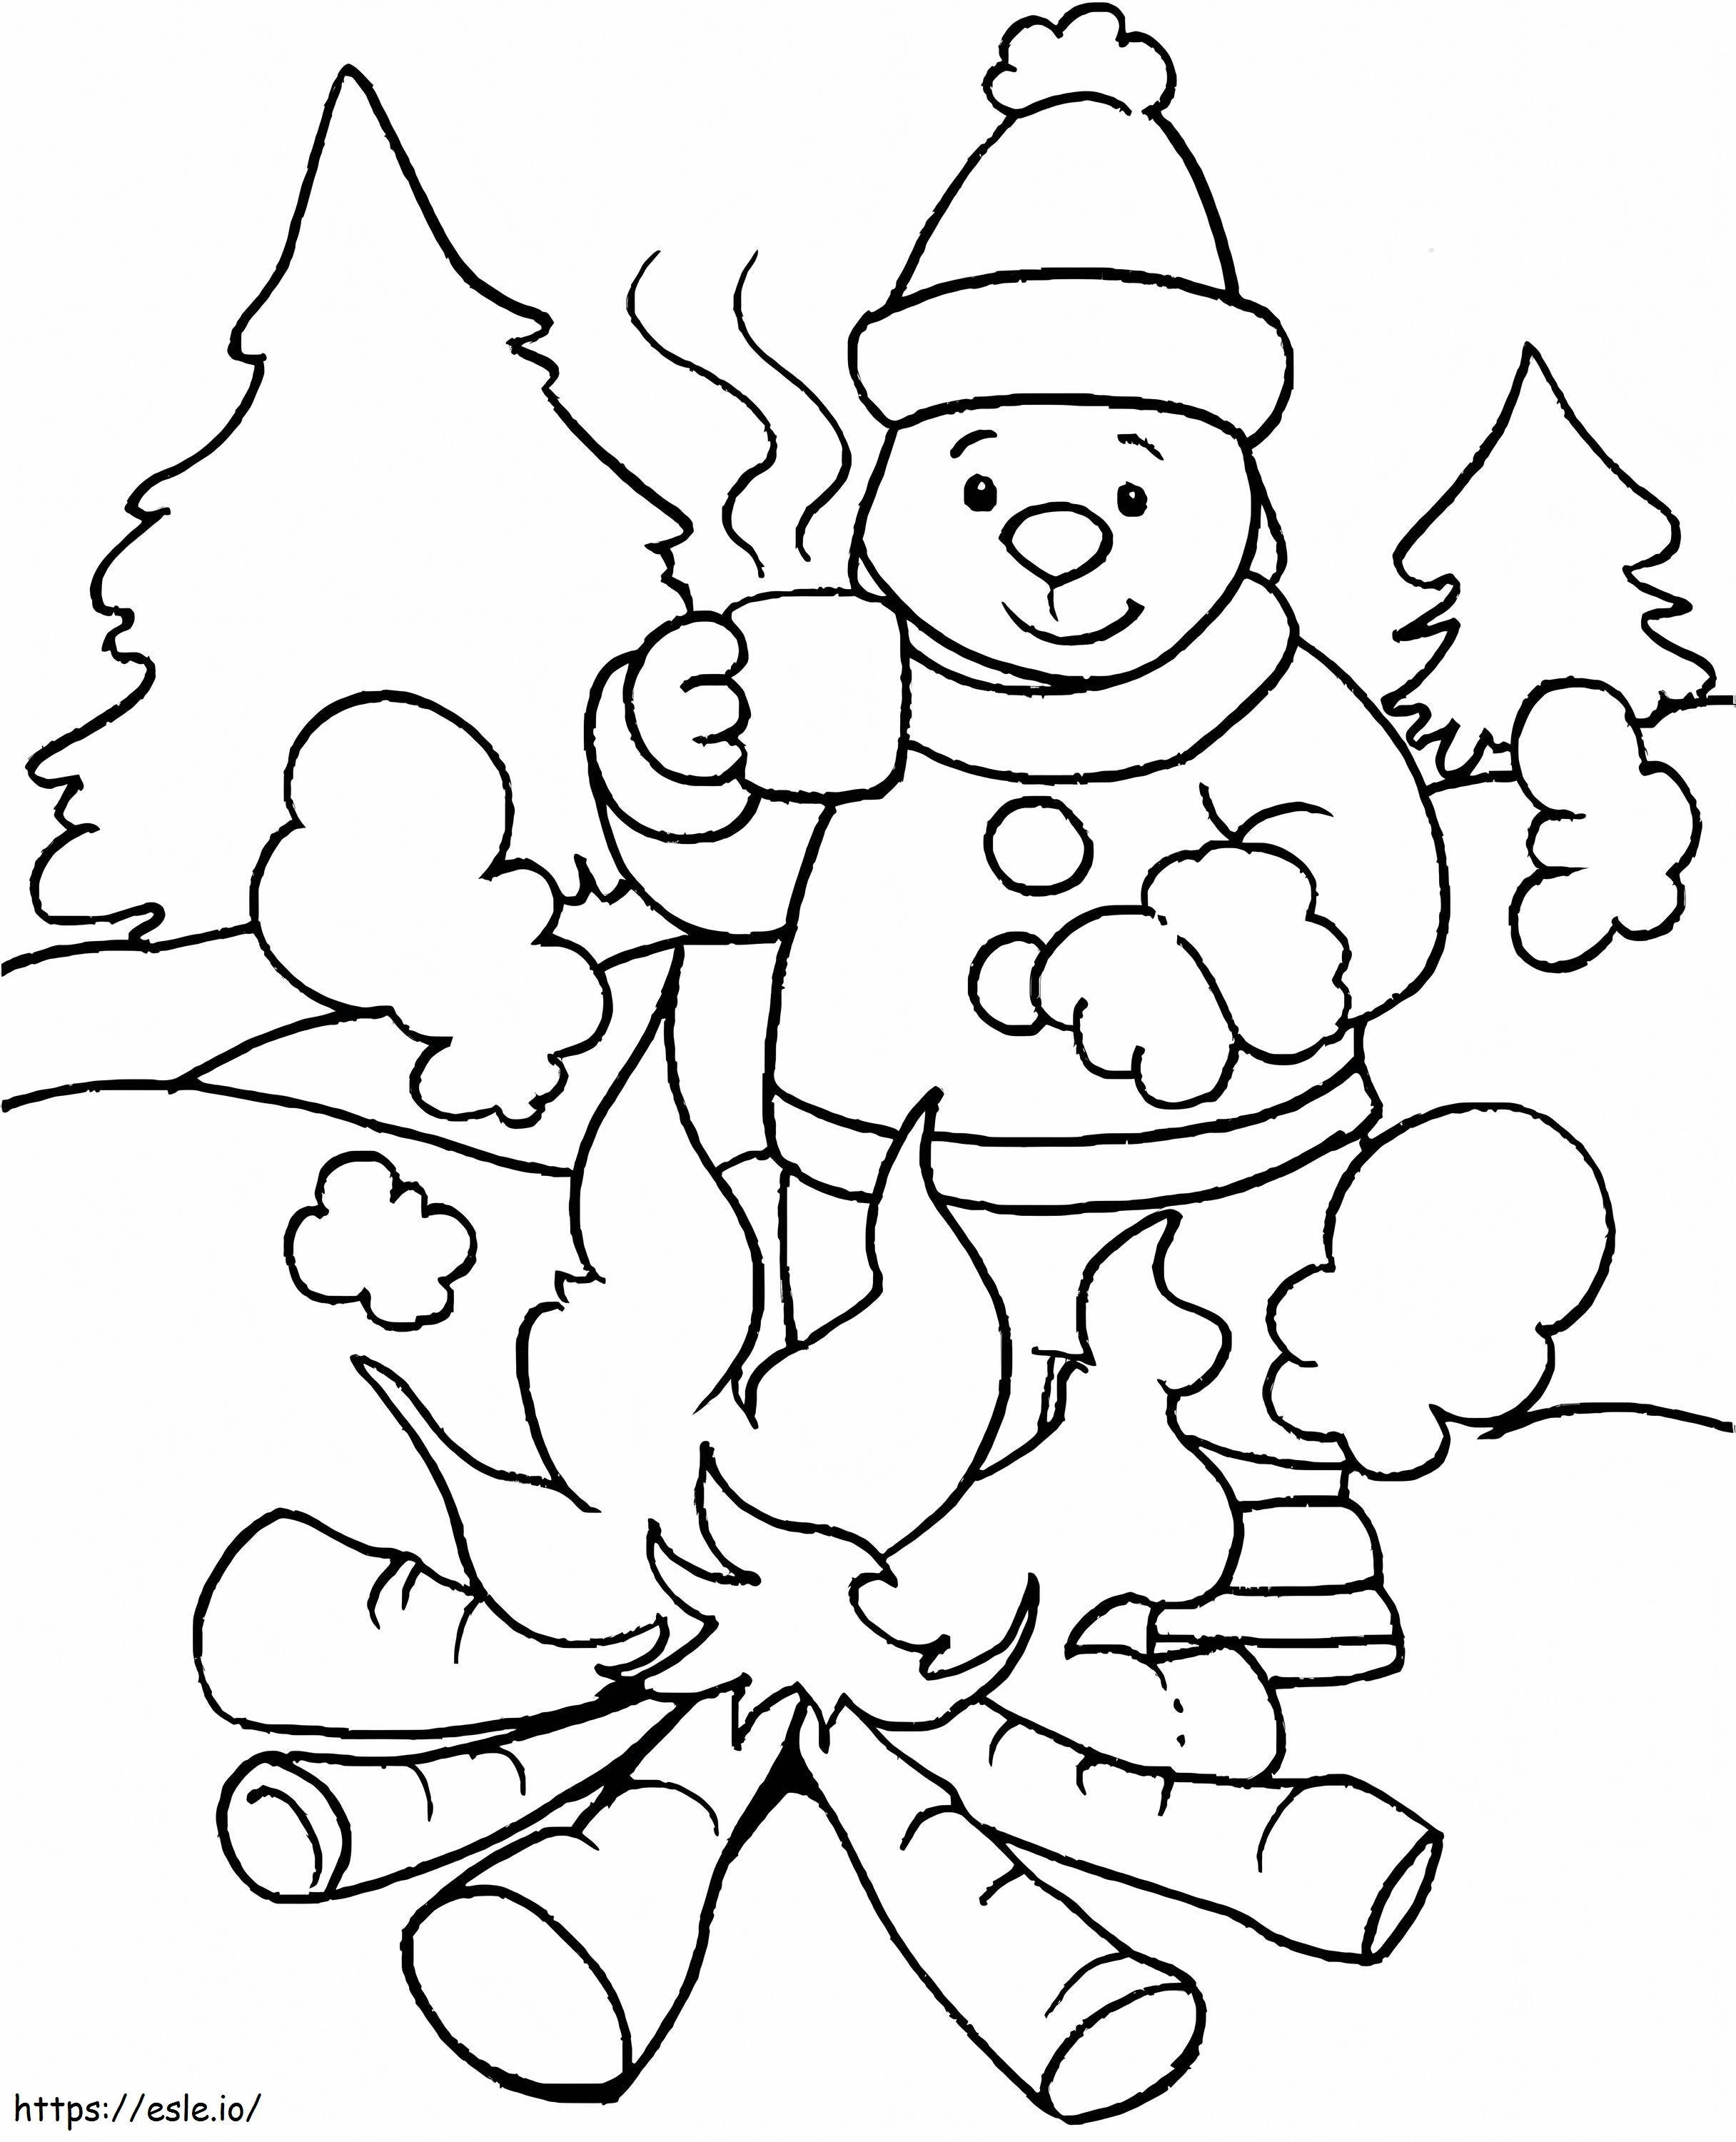 Acampamento de homens e bombeiros no inverno para colorir